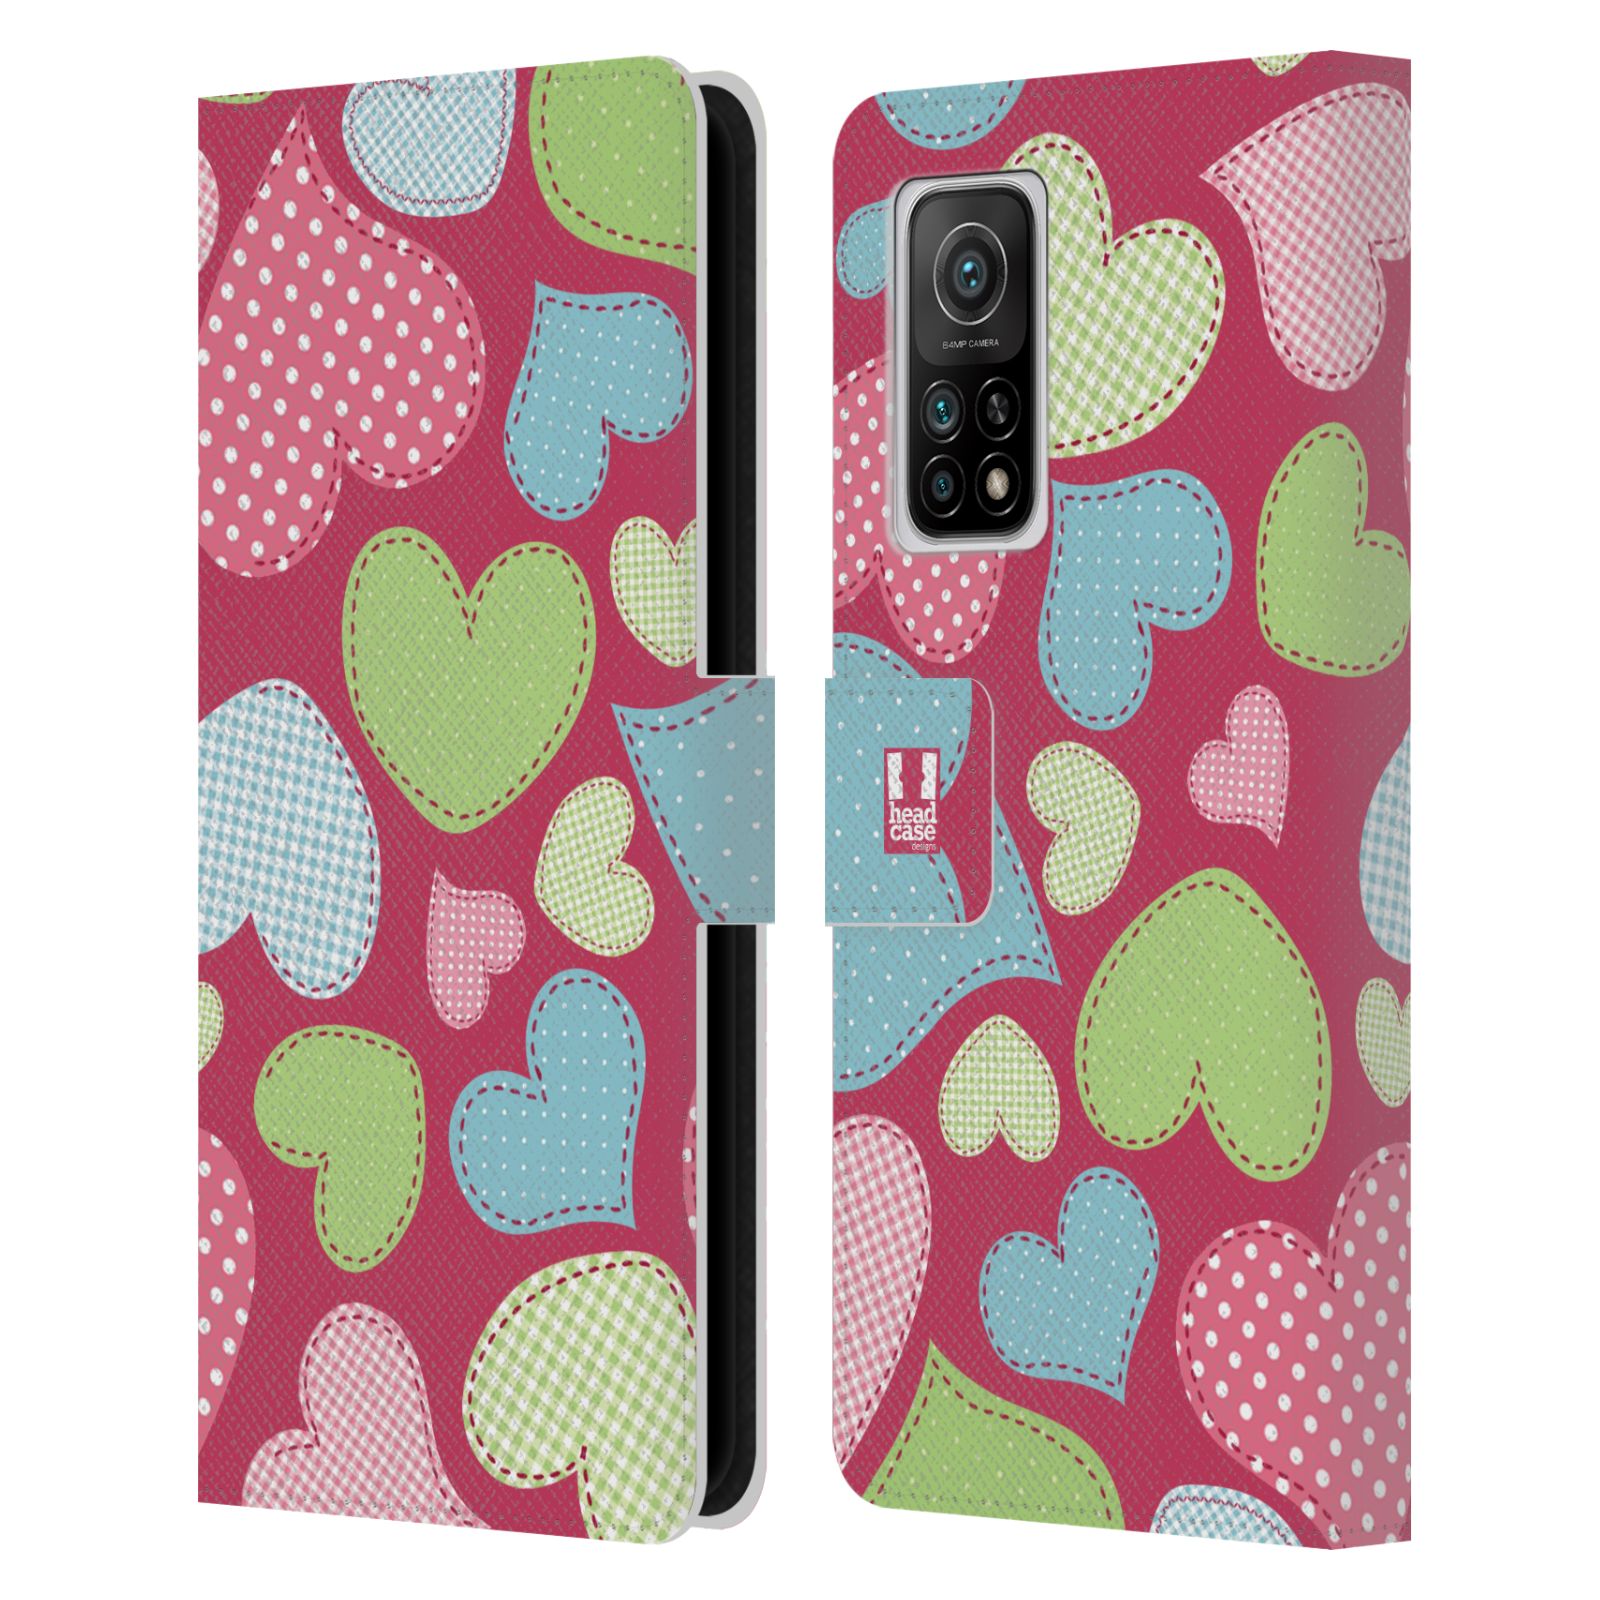 Pouzdro HEAD CASE na mobil Xiaomi Mi 10T / Mi 10T PRO vzory barevných srdíček nášivka růžová barva